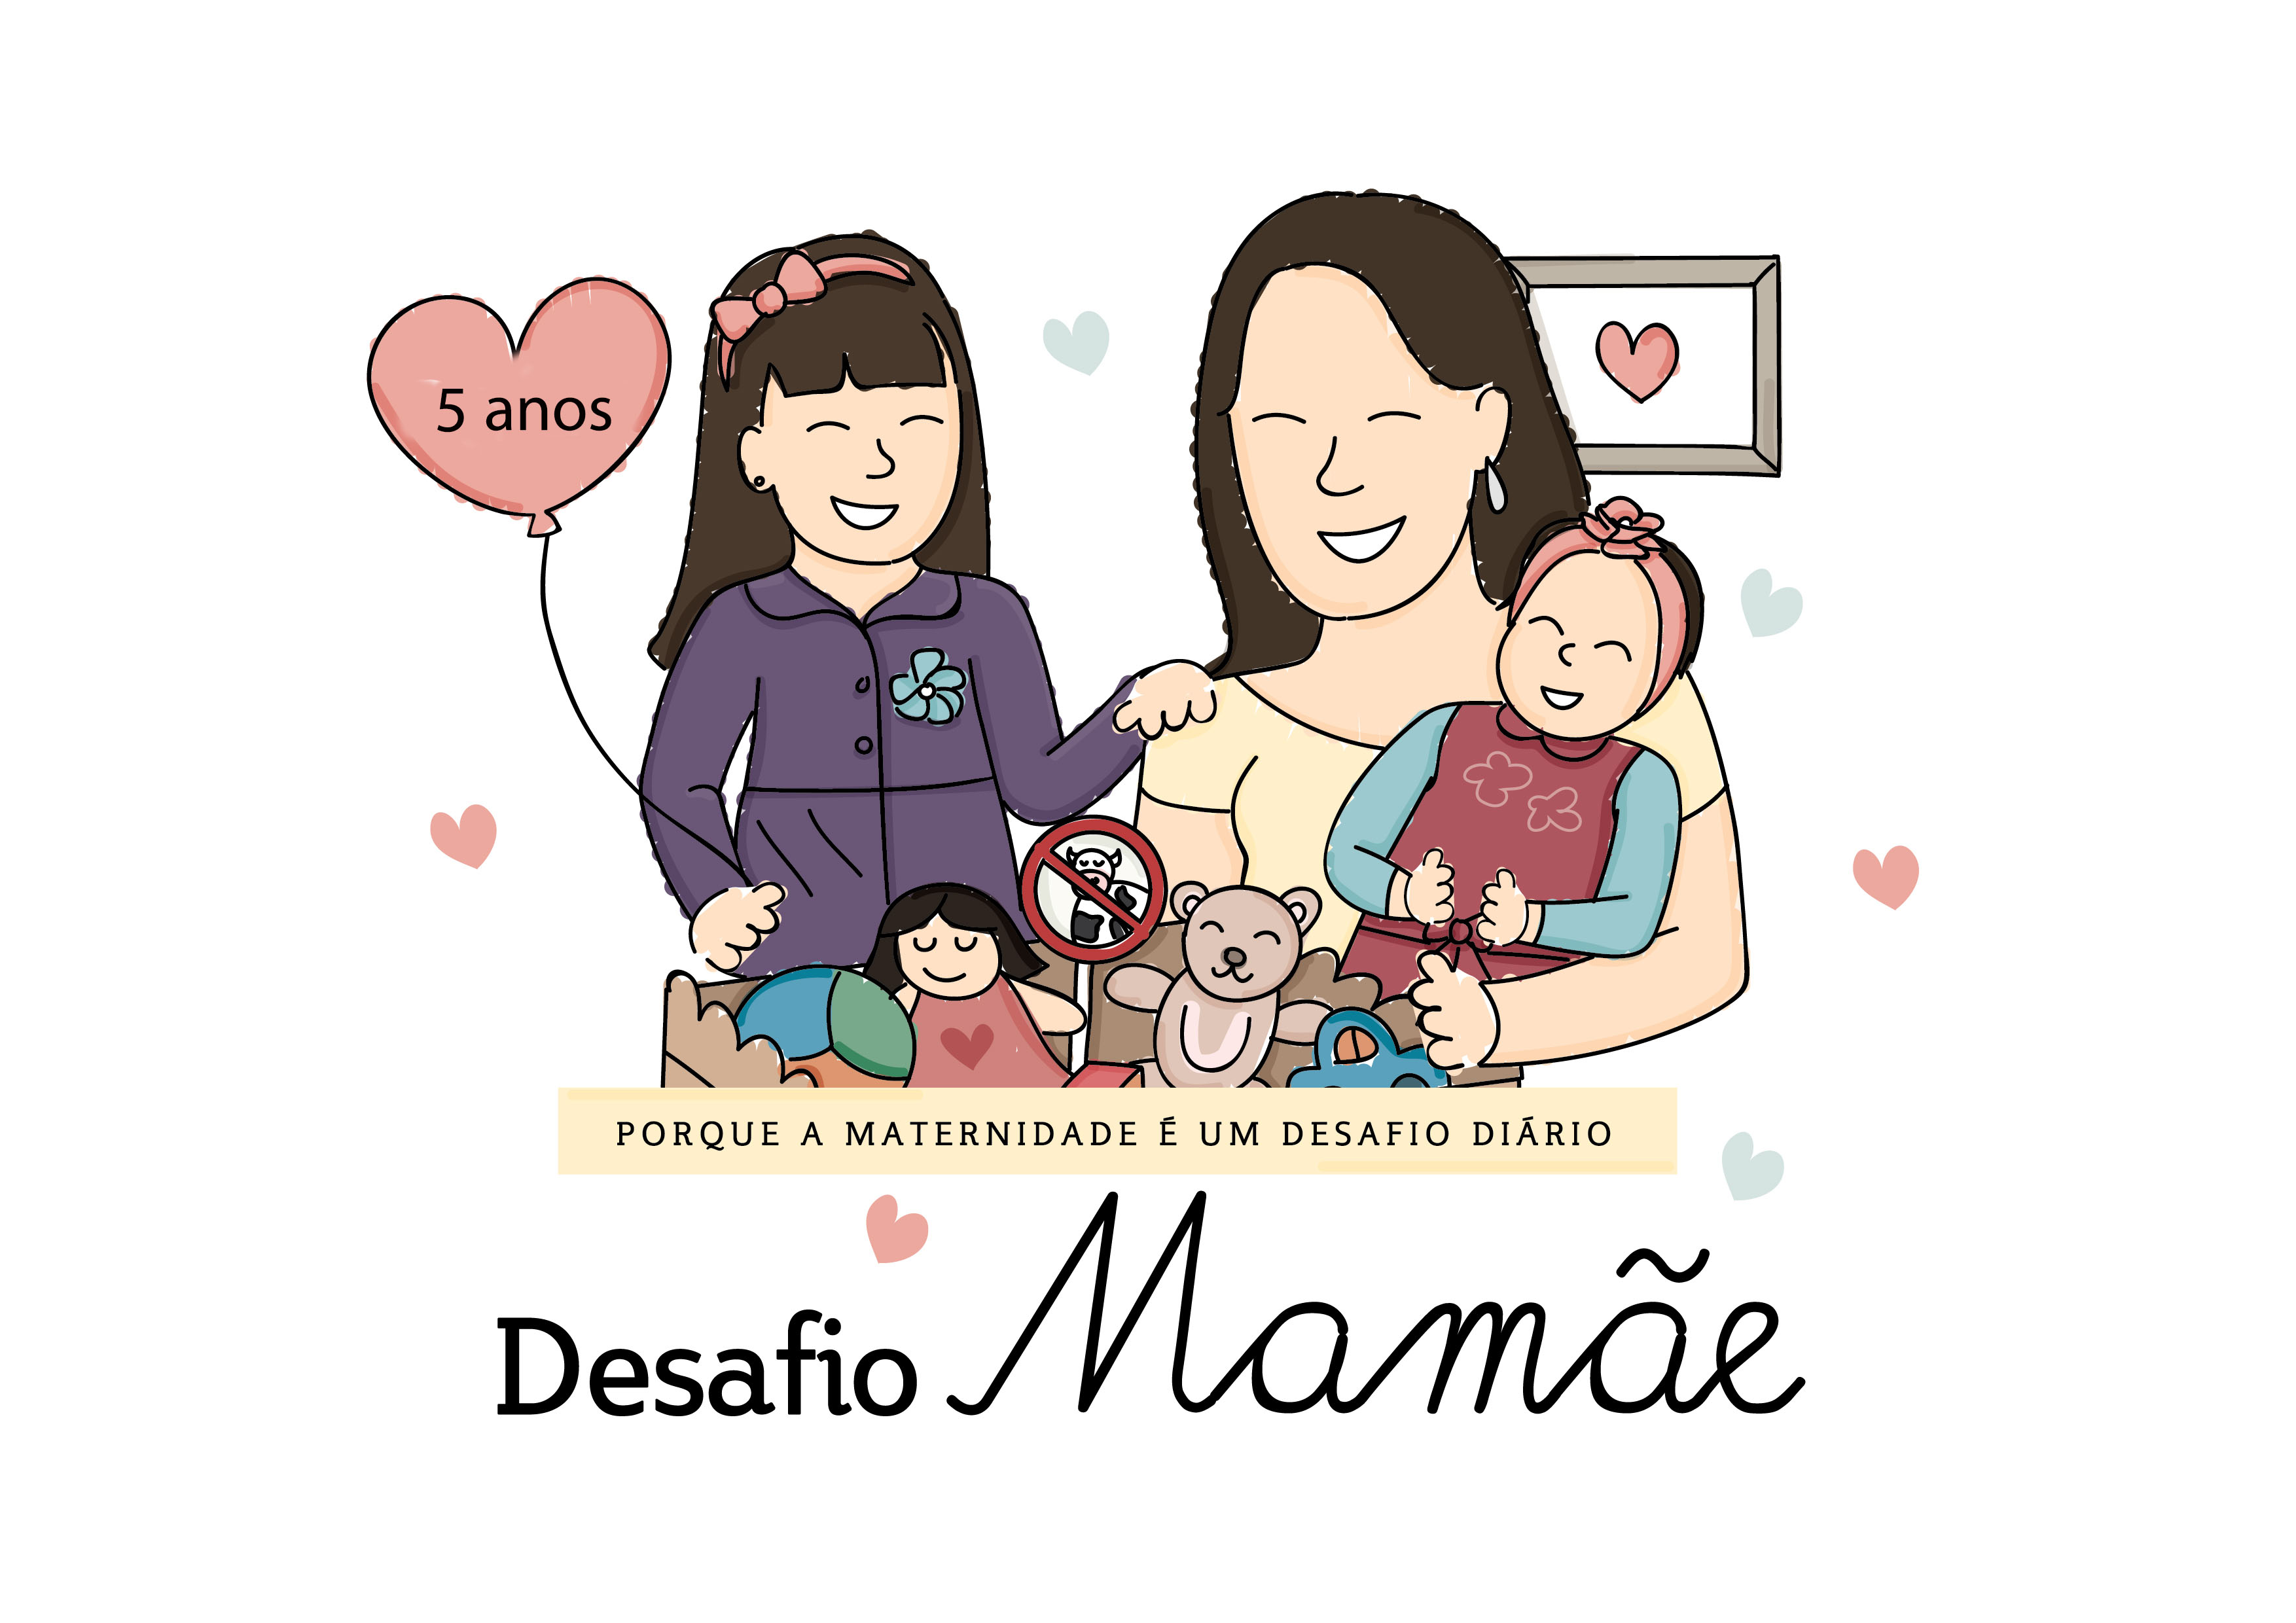 Aniversário de 5 anos do Blog Desafio Mamãe